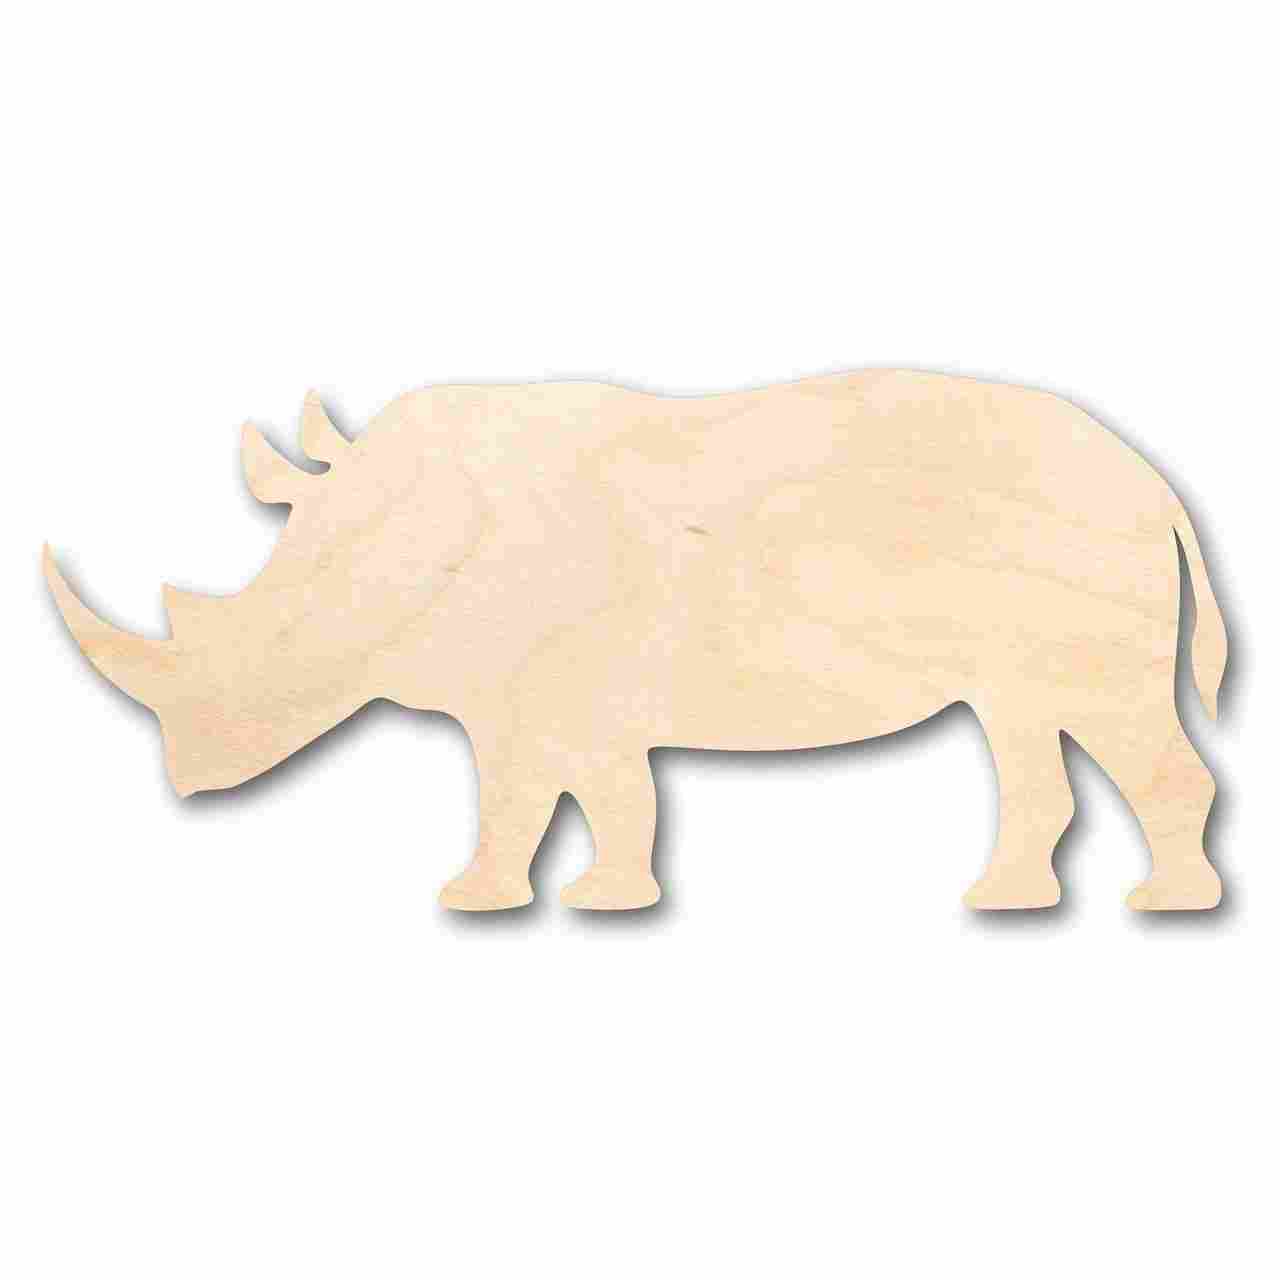 Unfinished Wooden Rhinoceros Shape - Animal - Wildlife - Craft - up to 24